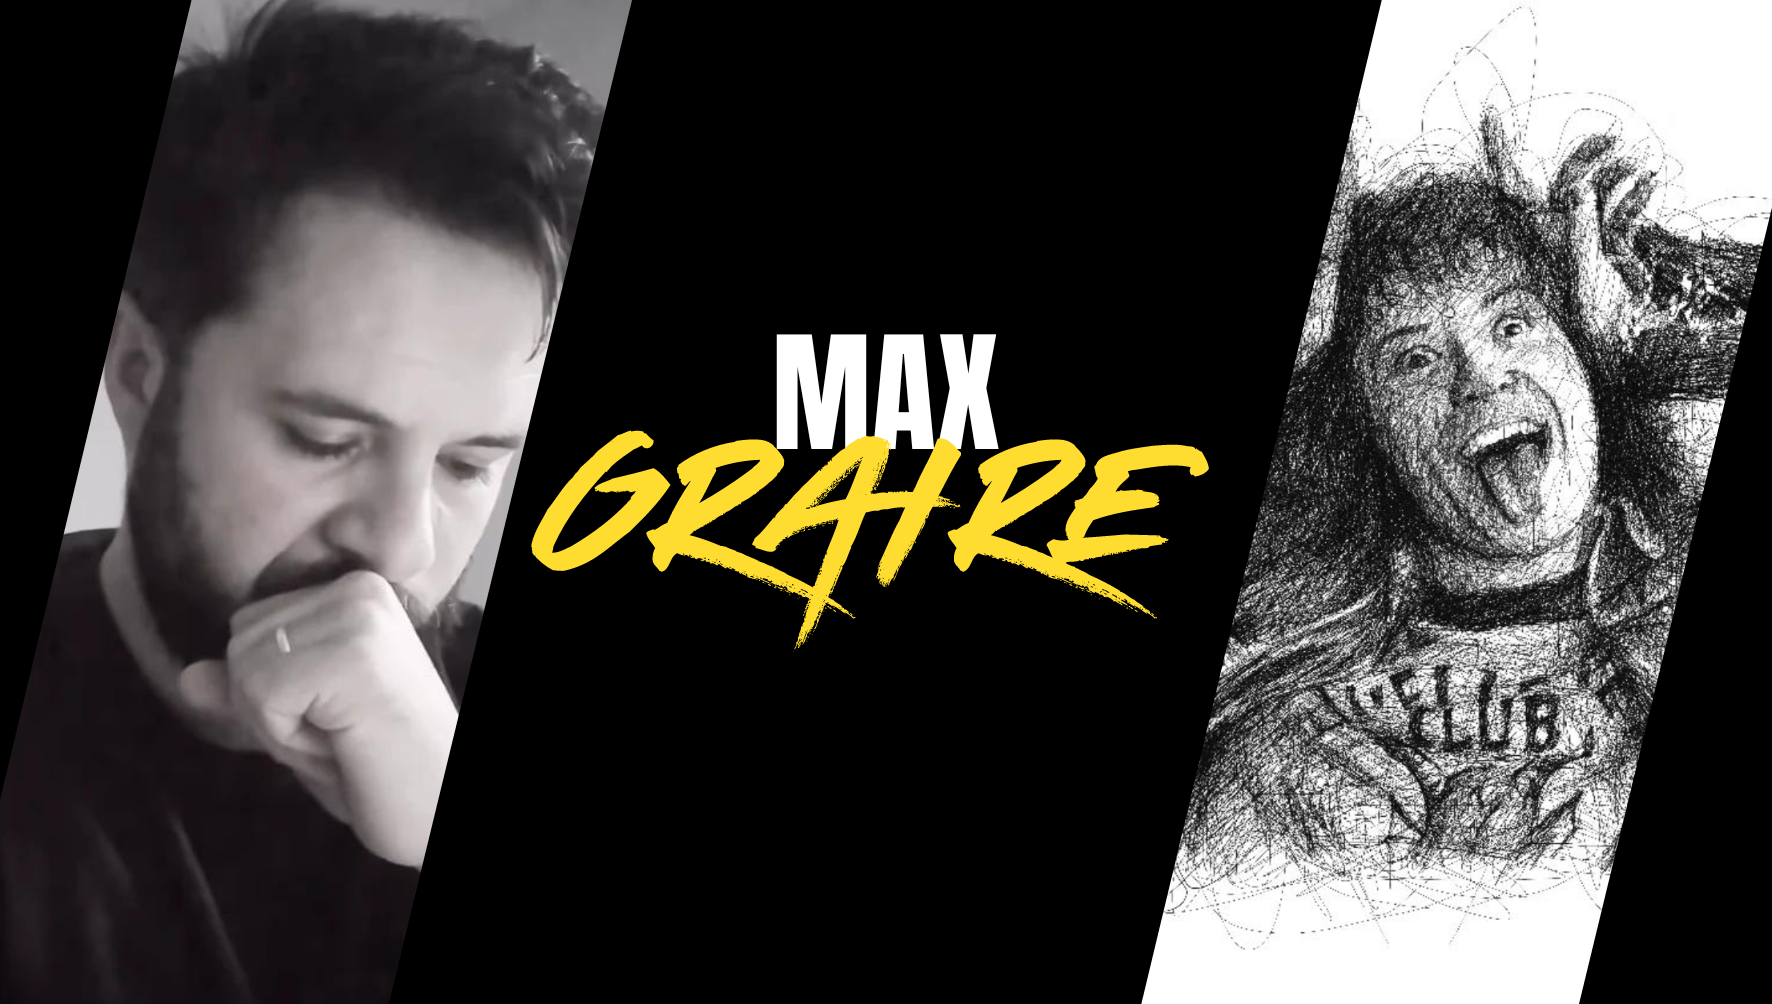 Max Graire